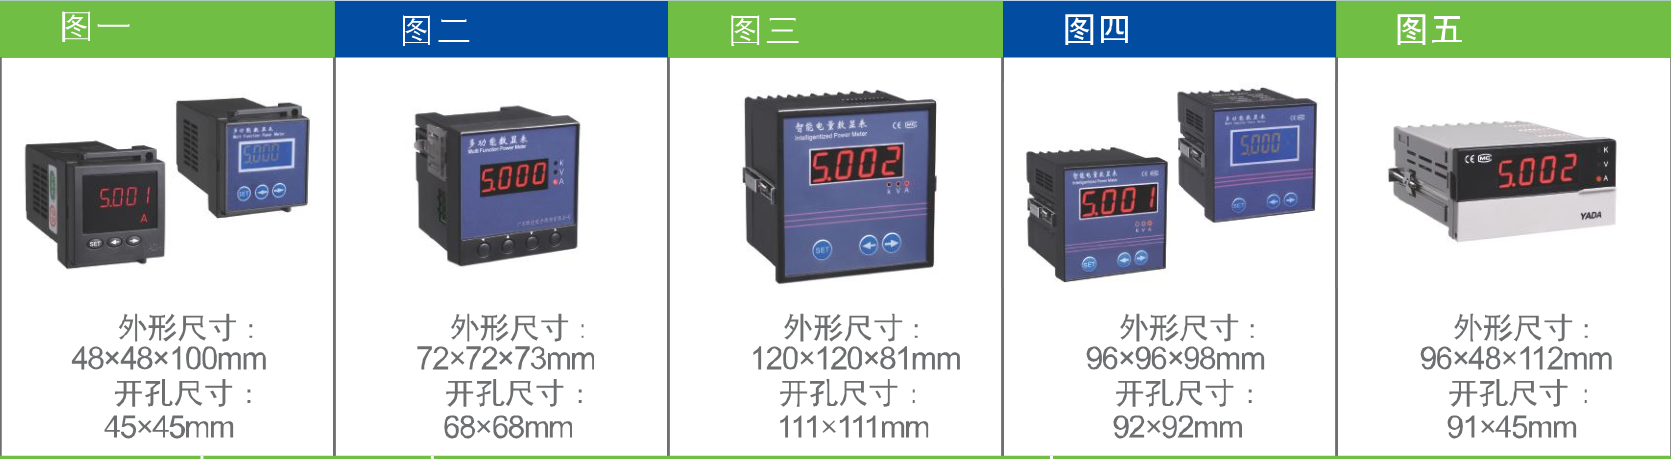 综合信号|压力|转速|温度信号显示仪选型须知价格参数--汉德尔电气